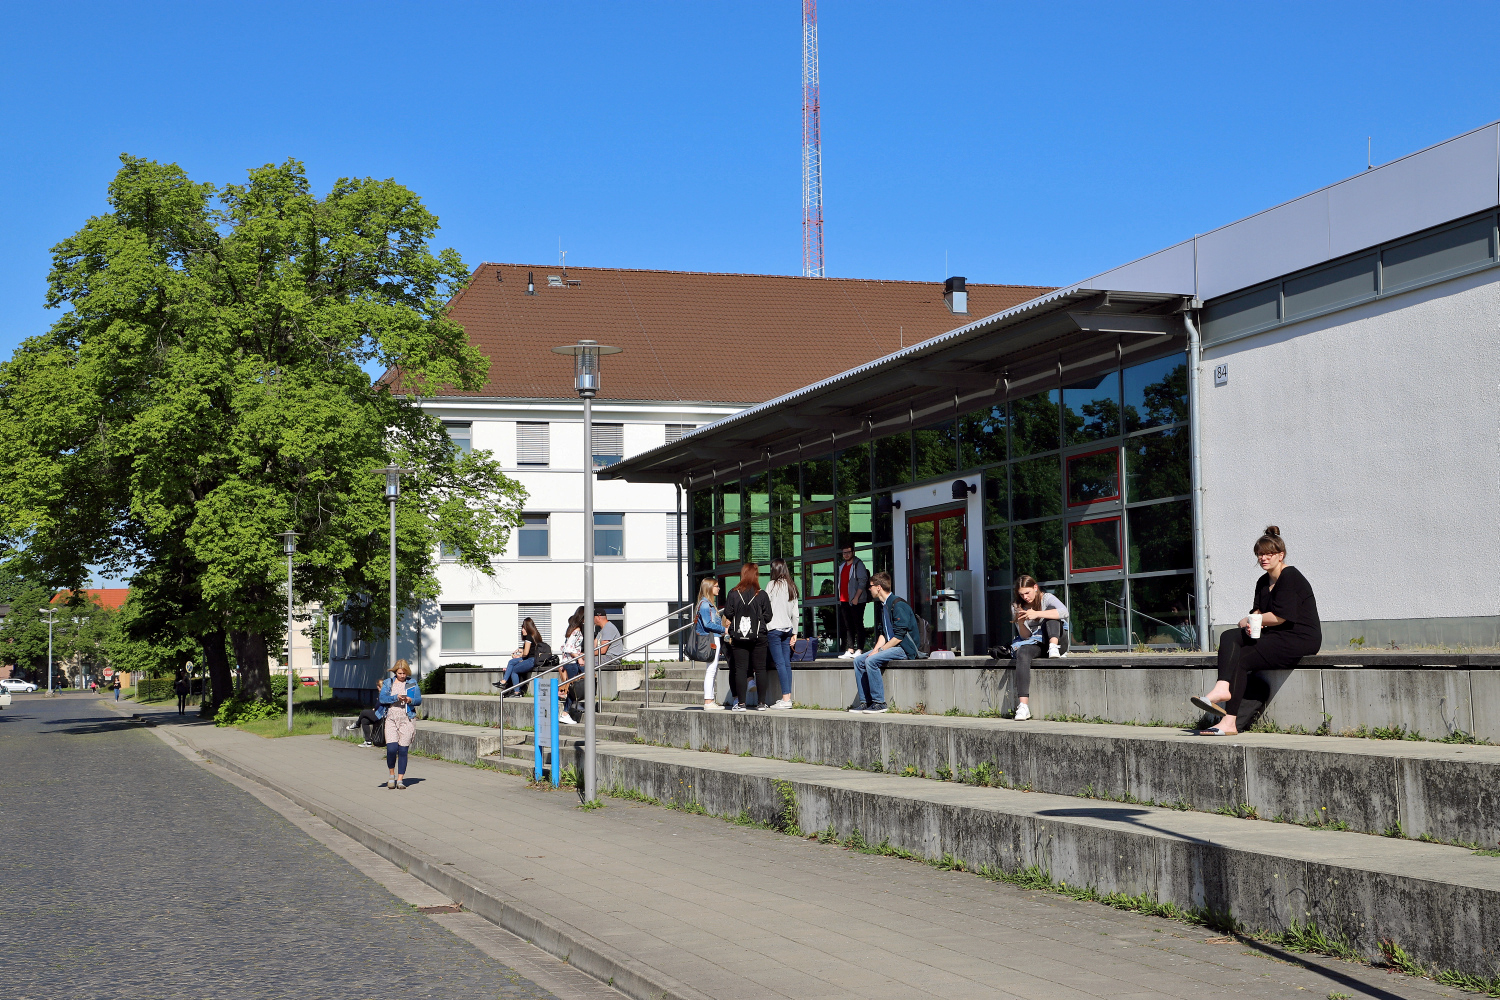 Am Campus Nord findet am 24. Juni ein Literaturfestival statt. Bildnachweis: Markus Hörster/TU Braunschweig